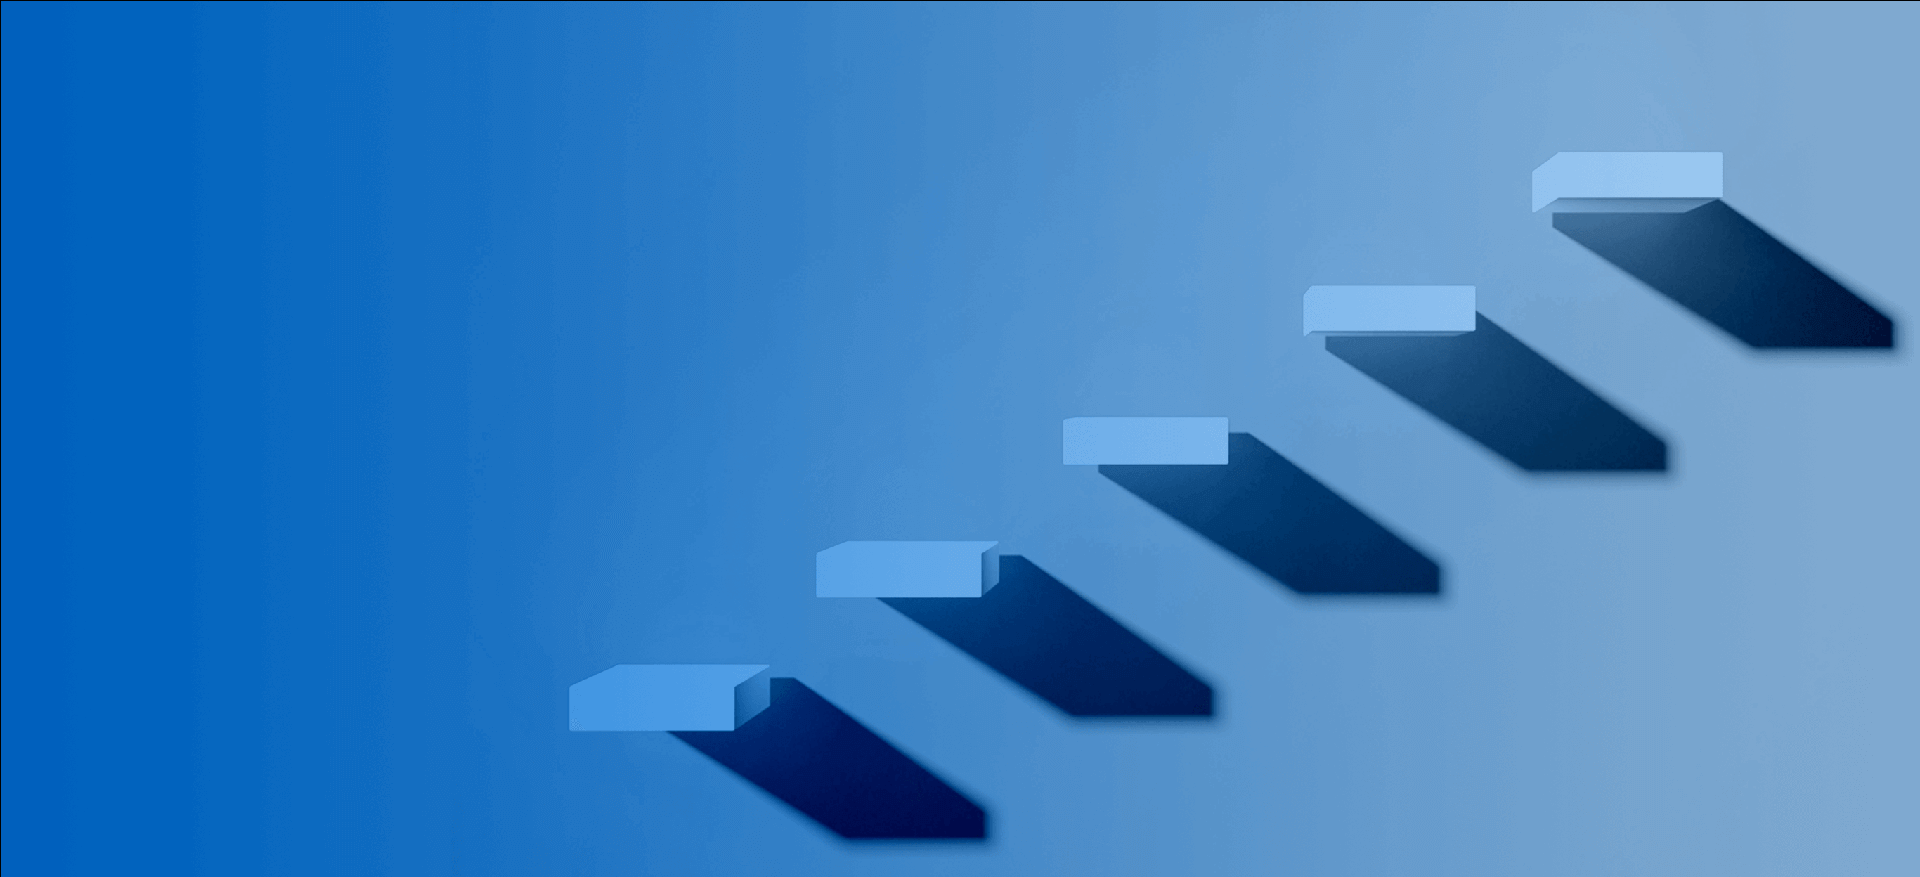 Associativ bild med trappor som växer uppåt vilket symboliserar affärstillväxt med Grownu-systemet